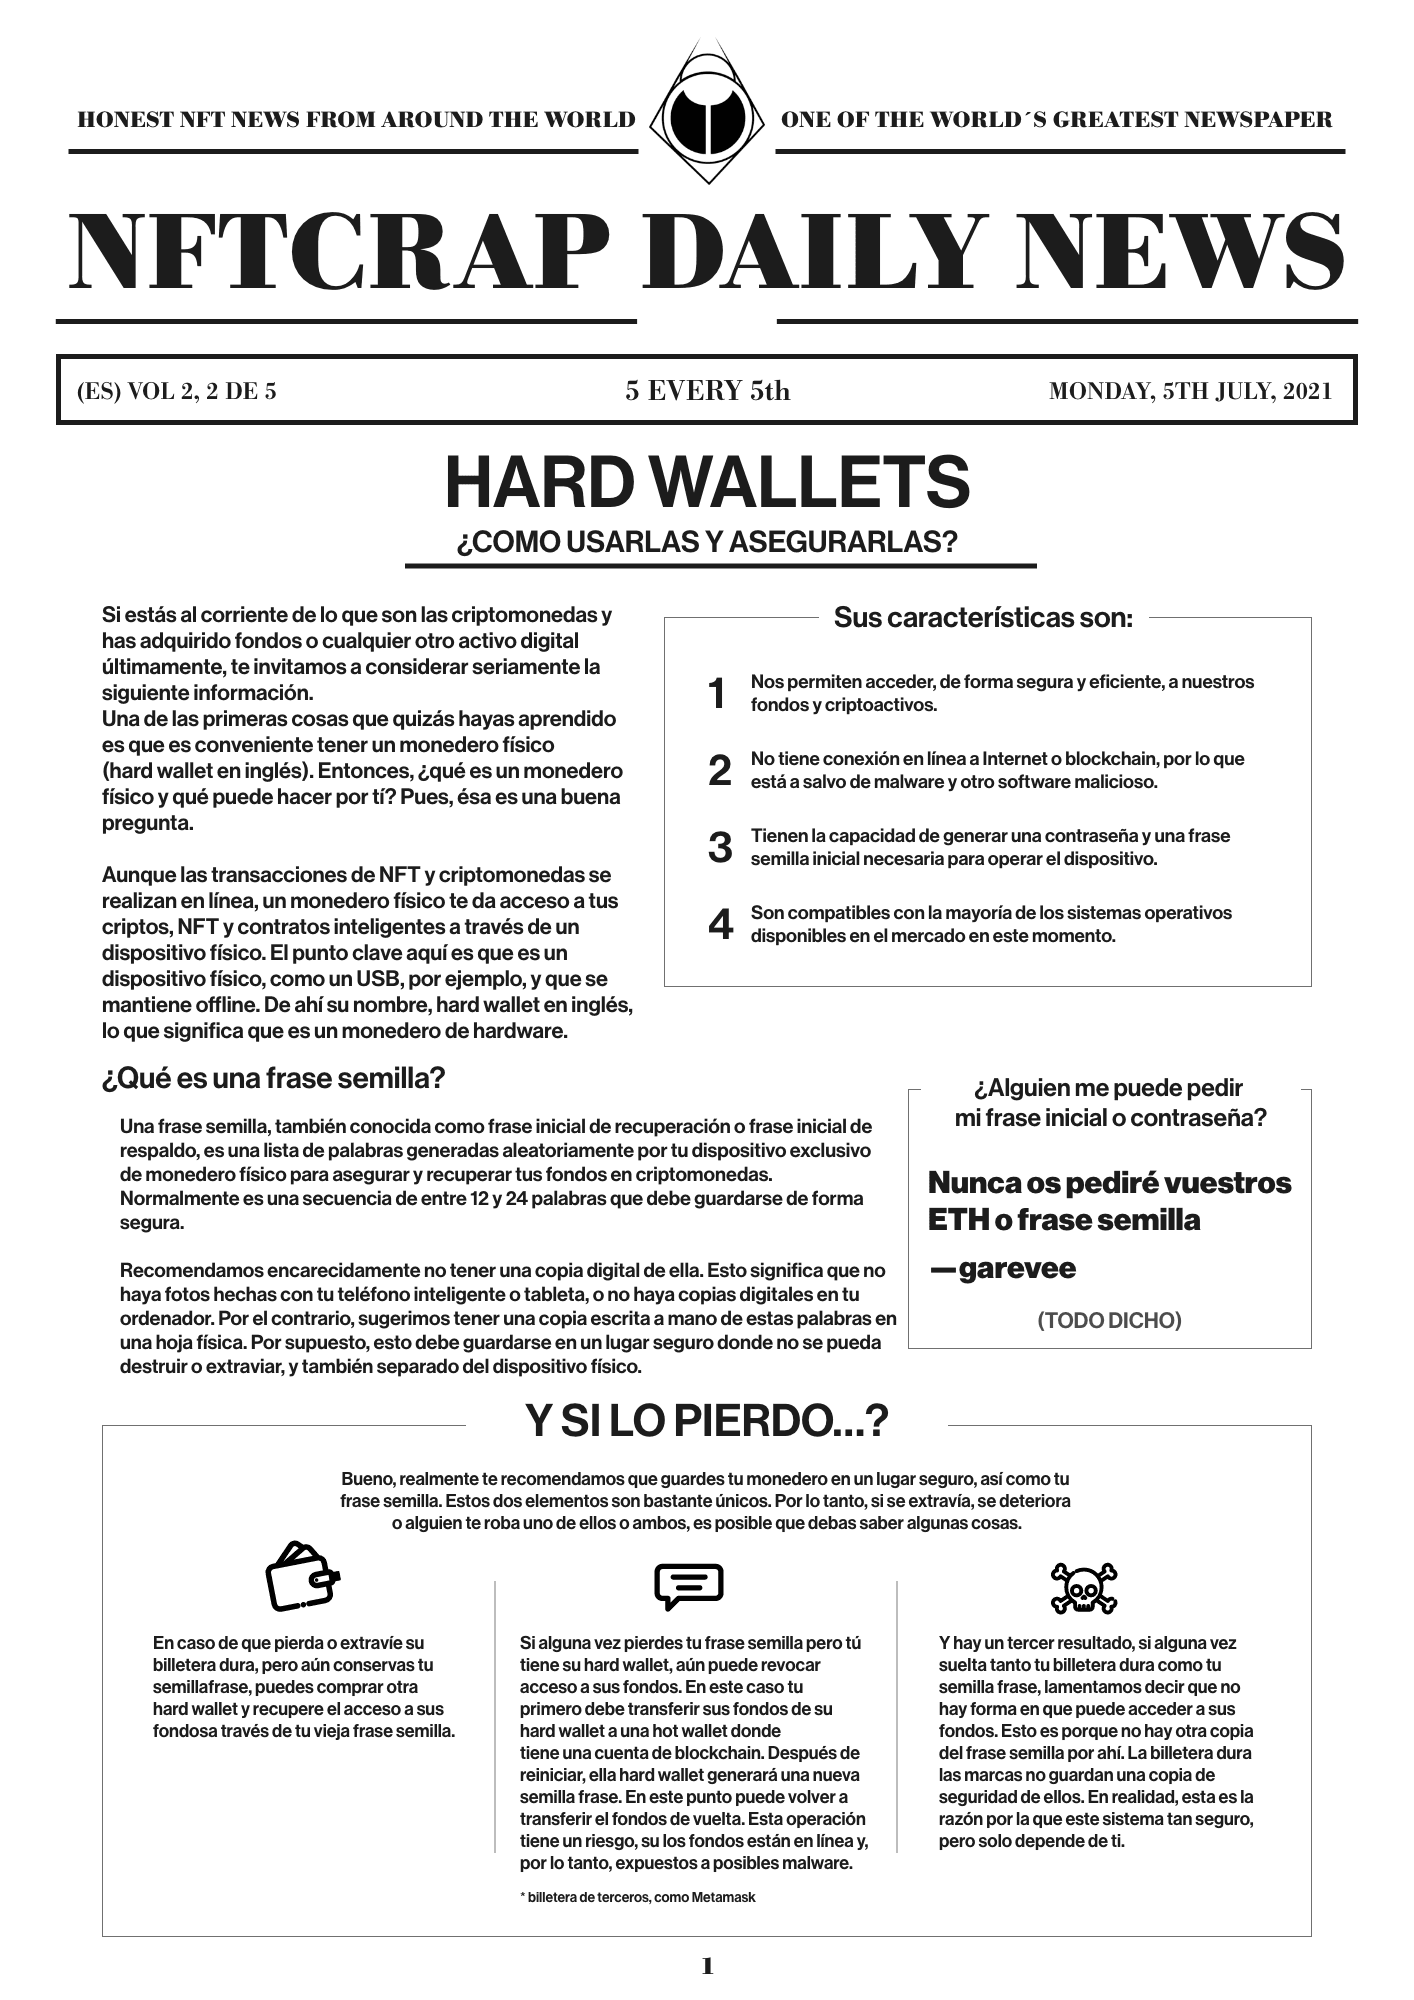 Hard Wallets (ES) #2/5